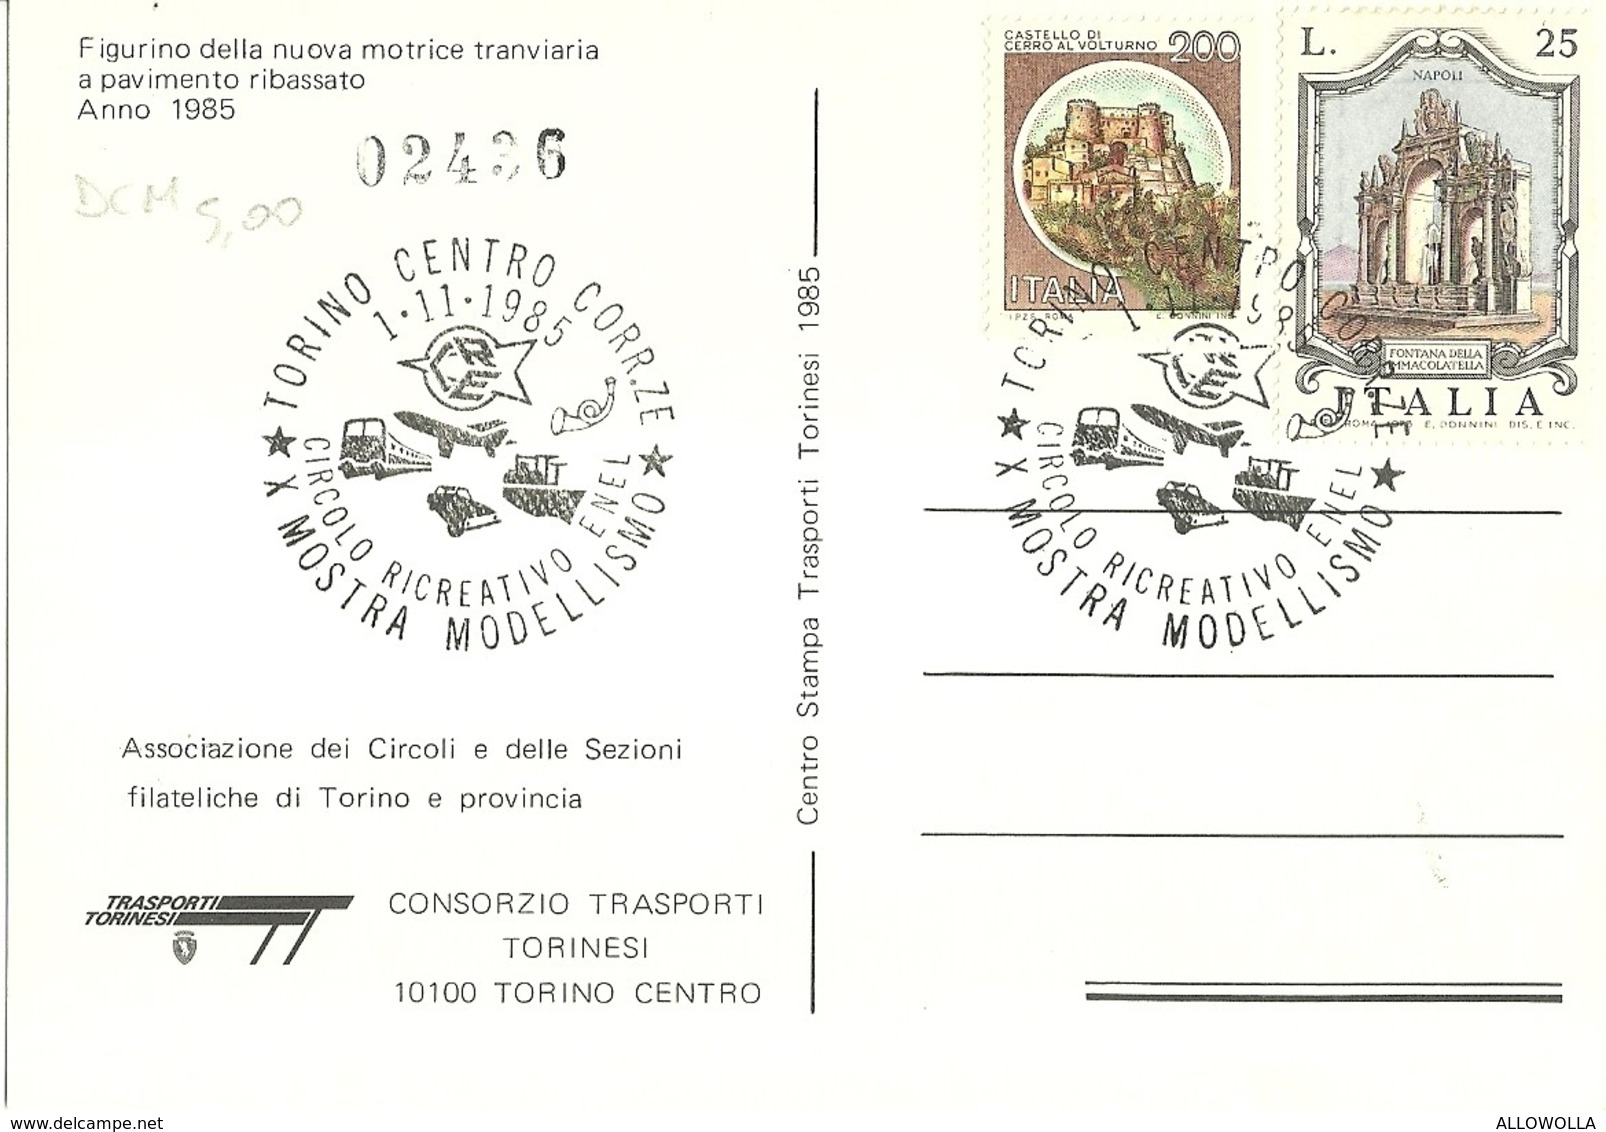 669 "FIGURINO DELLA NUOVA MOTRICE TRANVIARIA A PAVIMENTO RIBASSATO 1985" CART. NON SPED. - Transport